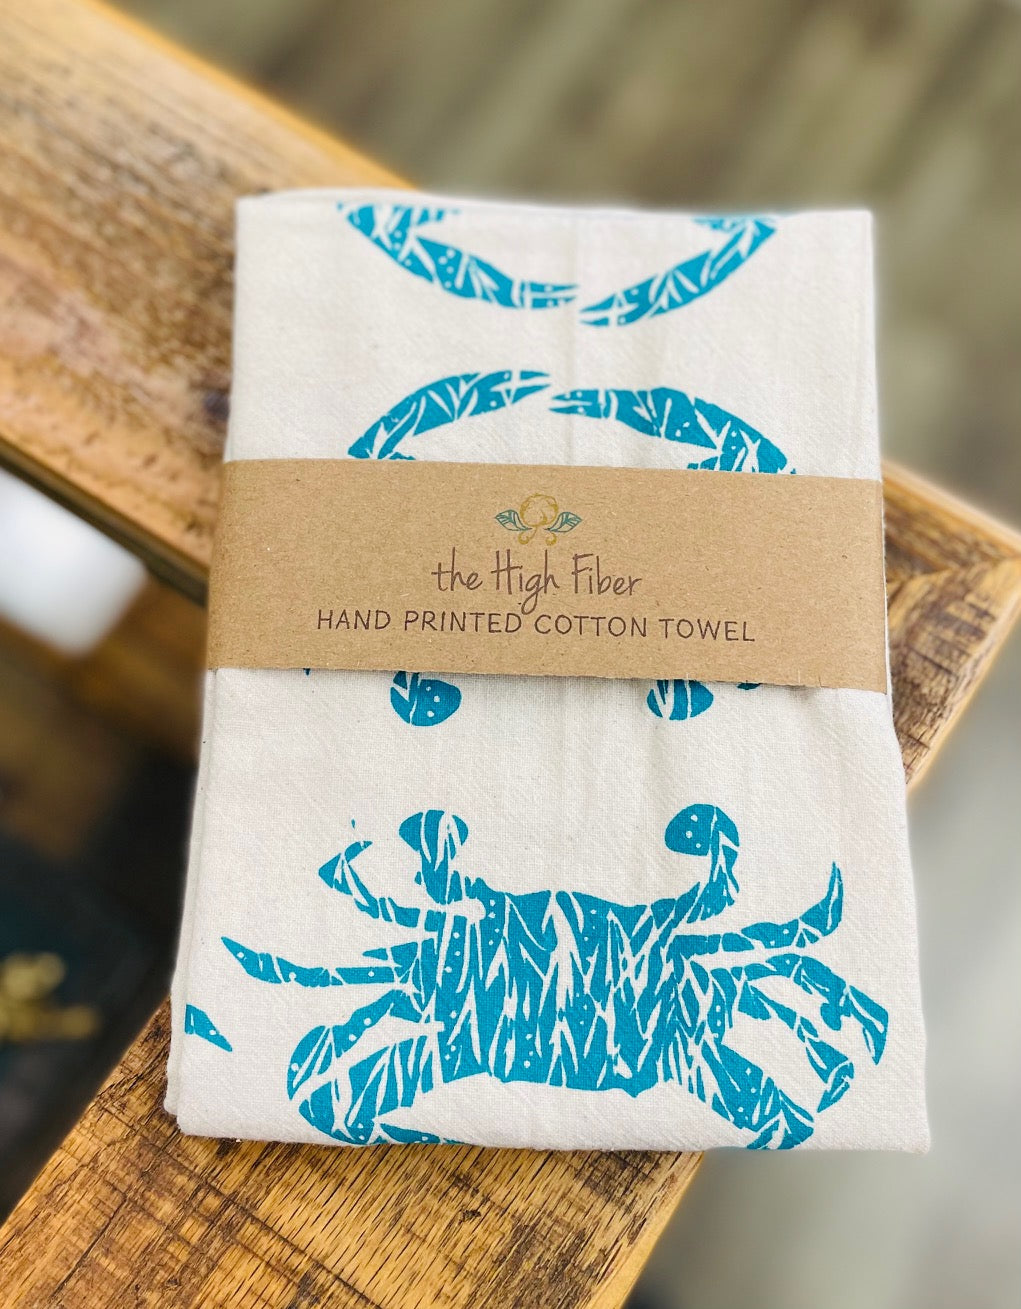 Blue Crab Tea Towel